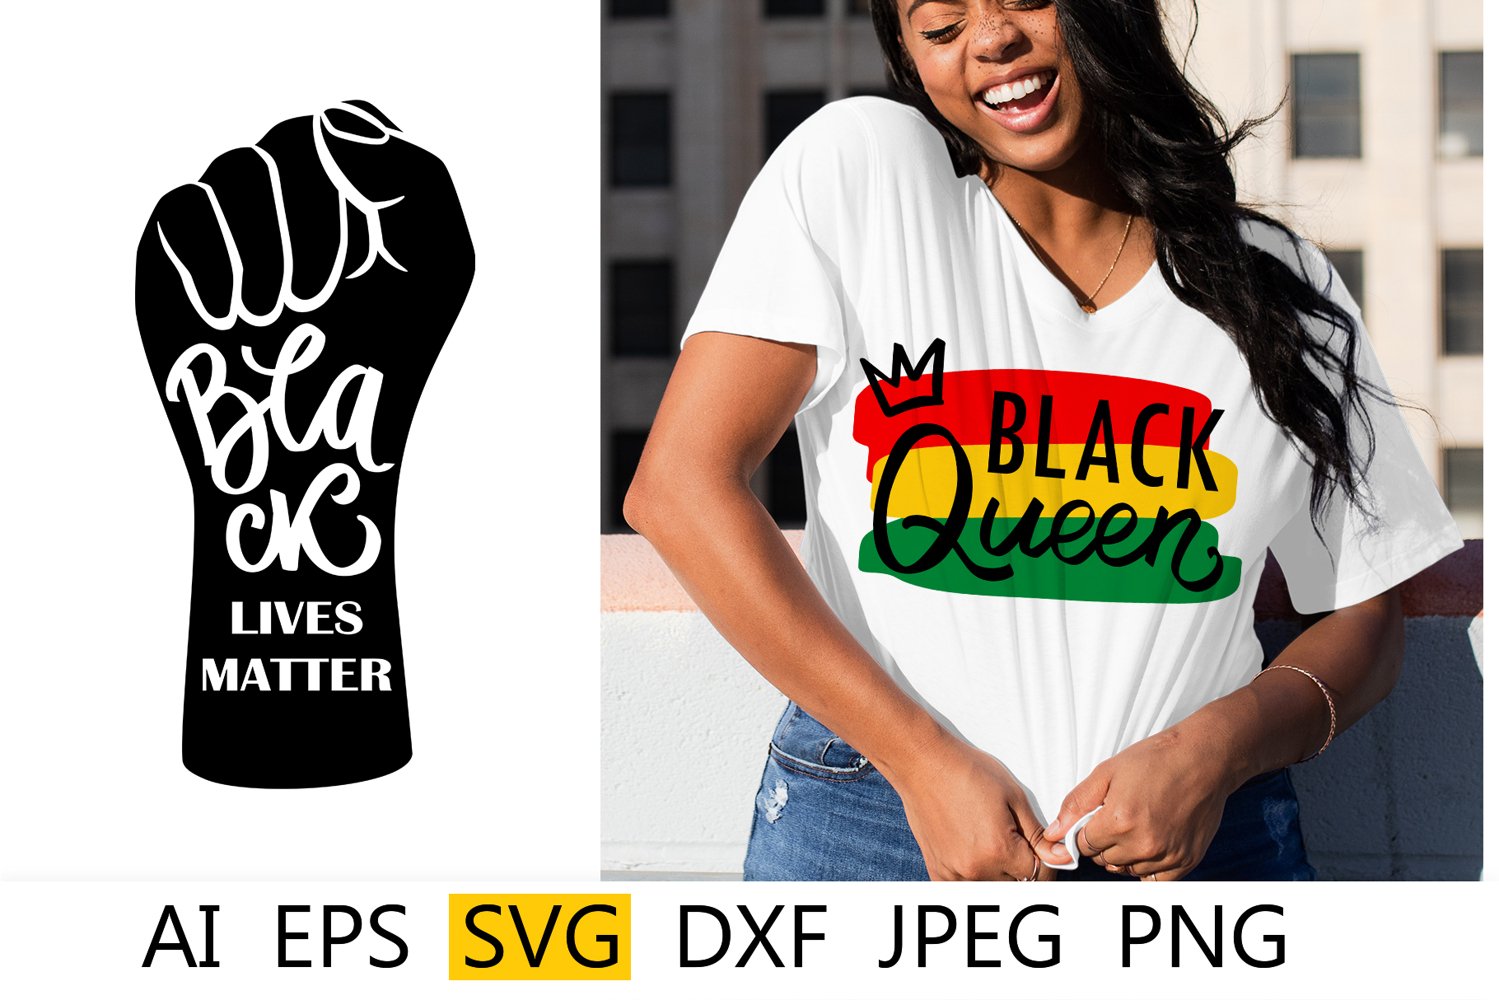 Black lives matter - colorful t-shirt design.